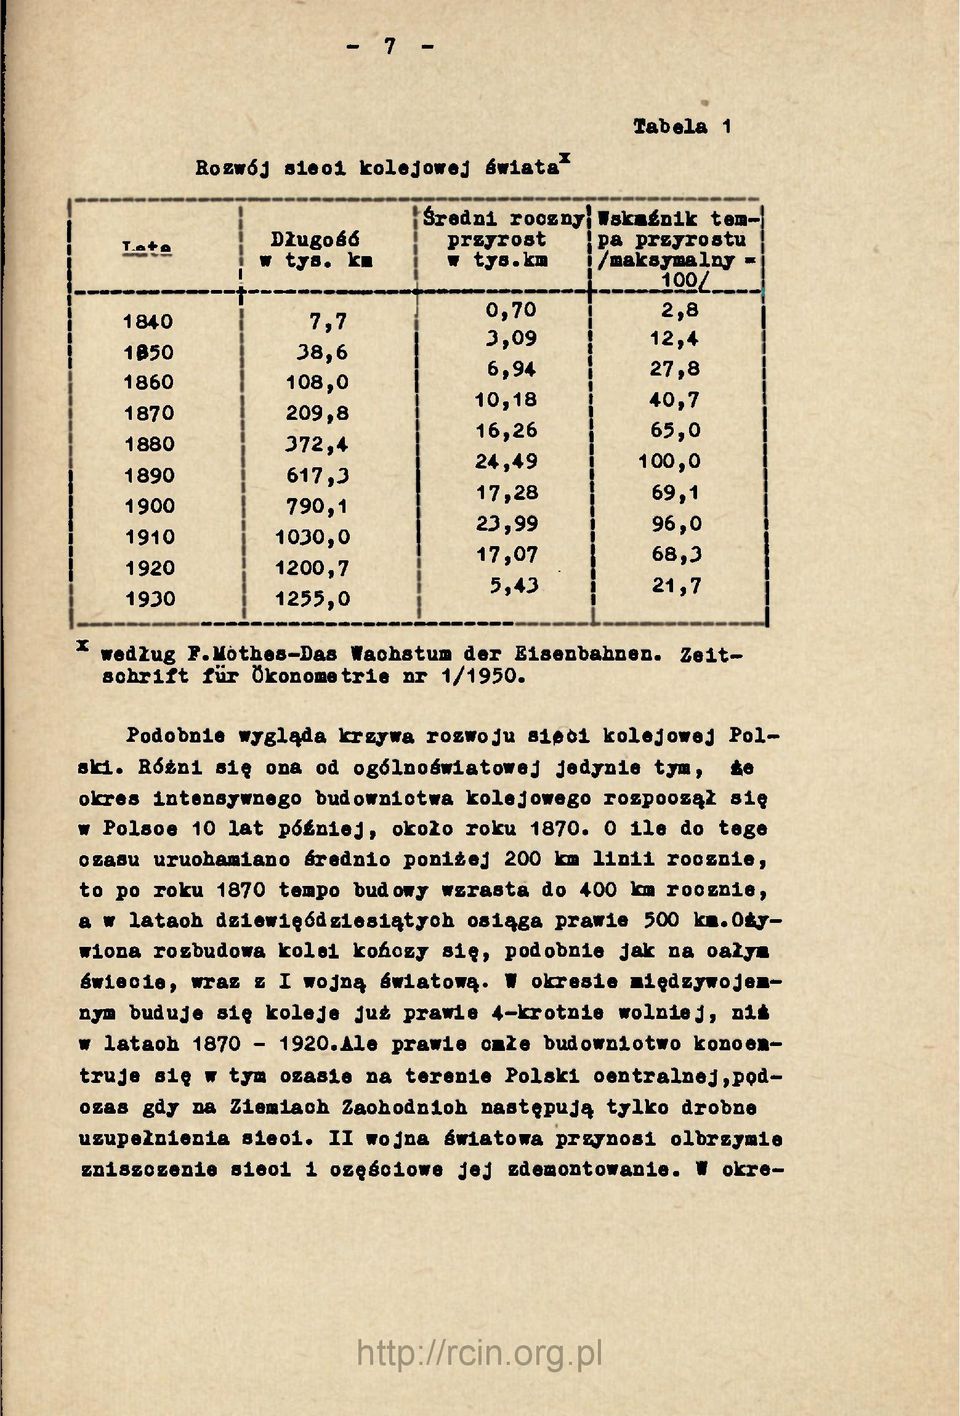 21,7 'J' 1930 1255,0 x według F.Móthes-Das Wachstum der Eisenbahnen. Zeitschrift für Ökonometrie nr 1/1950. Podobnie wygląda krzywa rozwoju 81061 kolejowej Polski.